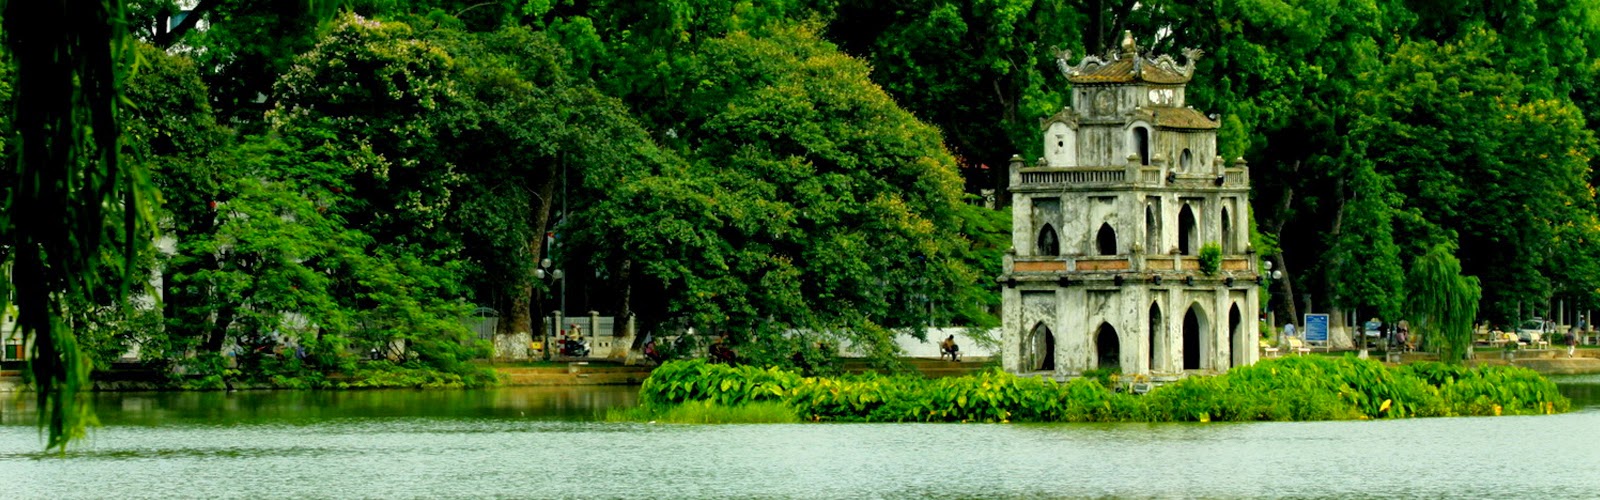 Hình ảnh Tháp Rùa Hồ Gươm rất đẹp